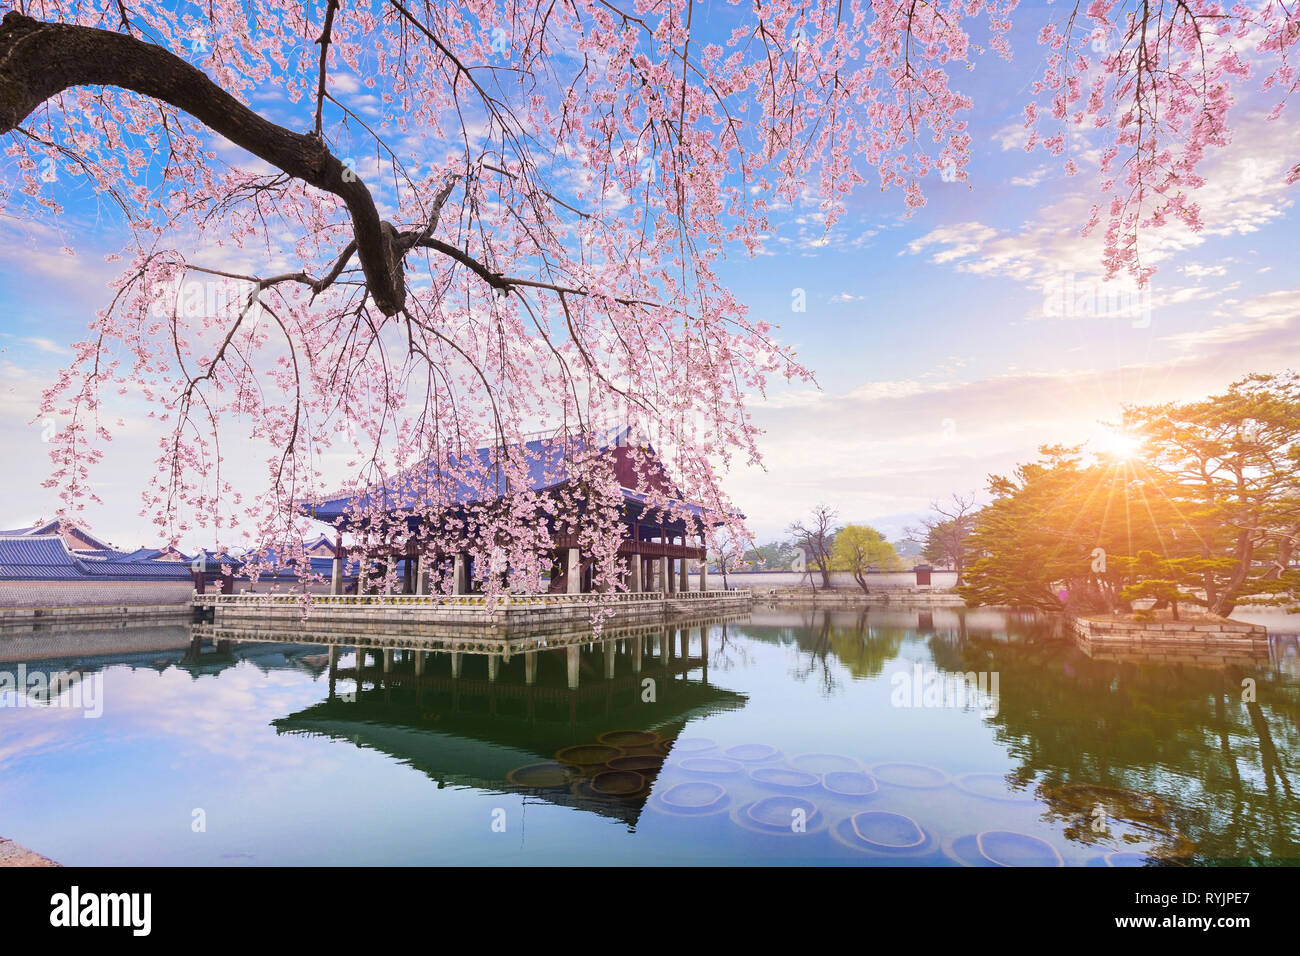 Gyeongbokgung palace avec cherry blossom tree au printemps dans la ville de Séoul de Corée, la Corée du Sud. Banque D'Images